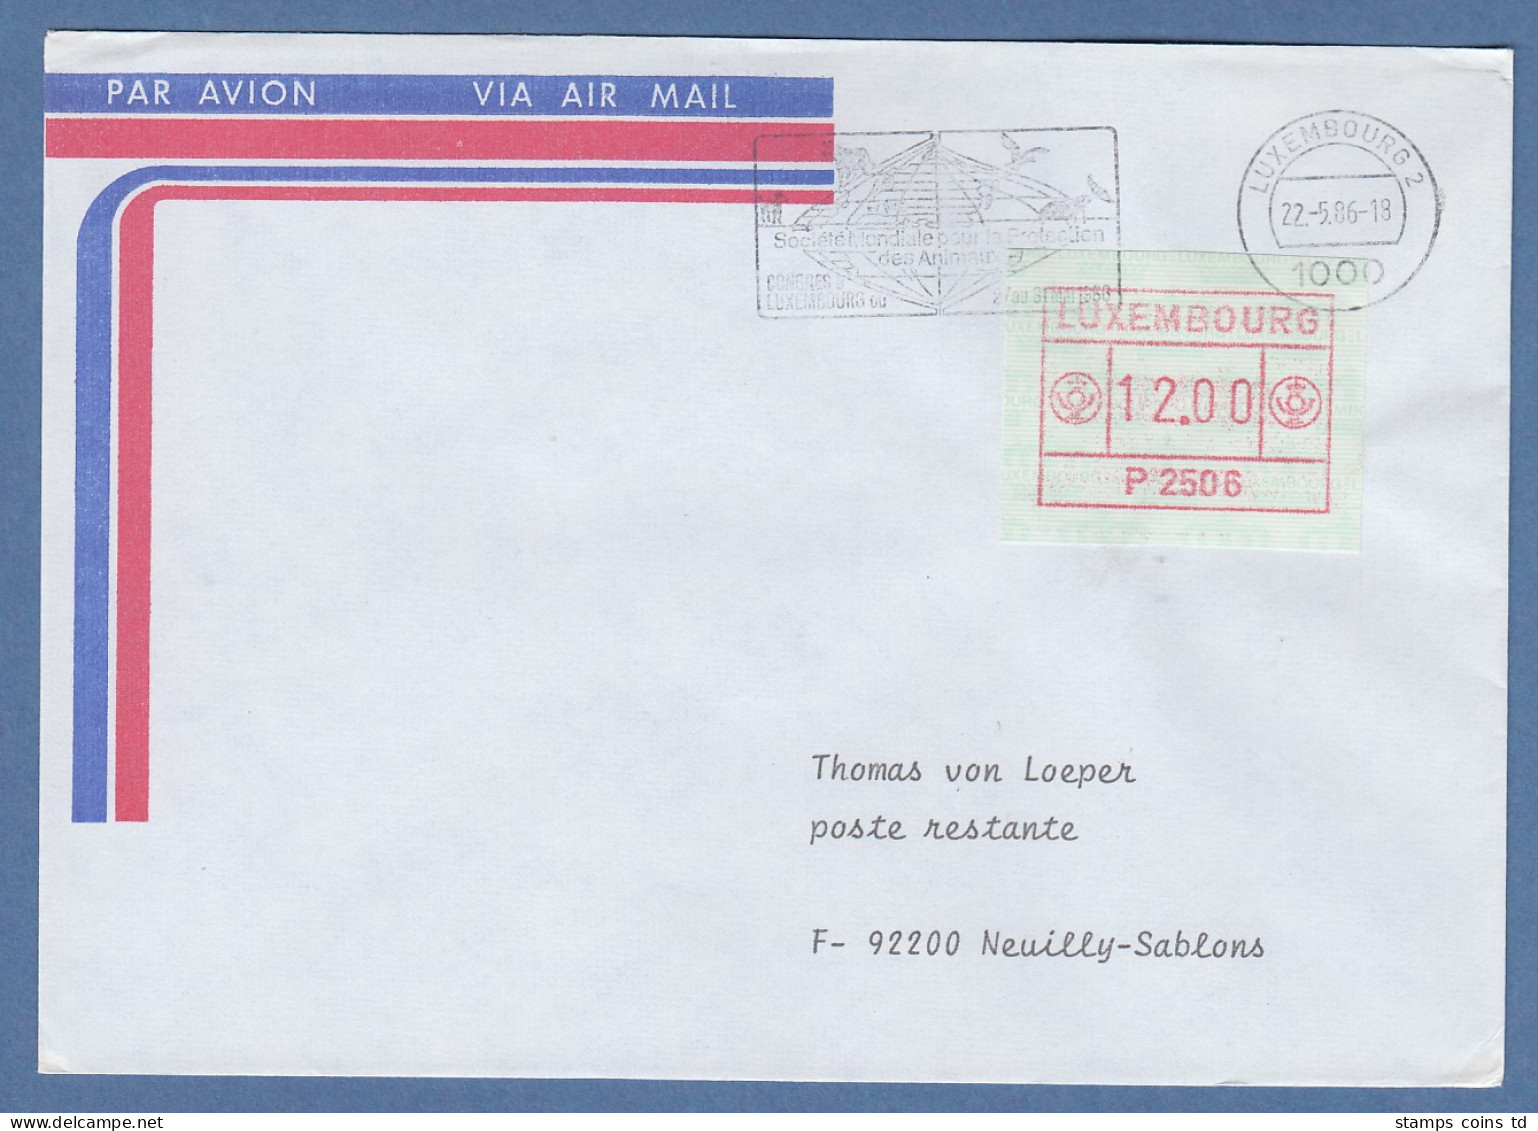 Luxemburg ATM P2506 Wert 12.00 Auf FDC Nach Frankreich, Masch.-O 22.5.86 - Postage Labels